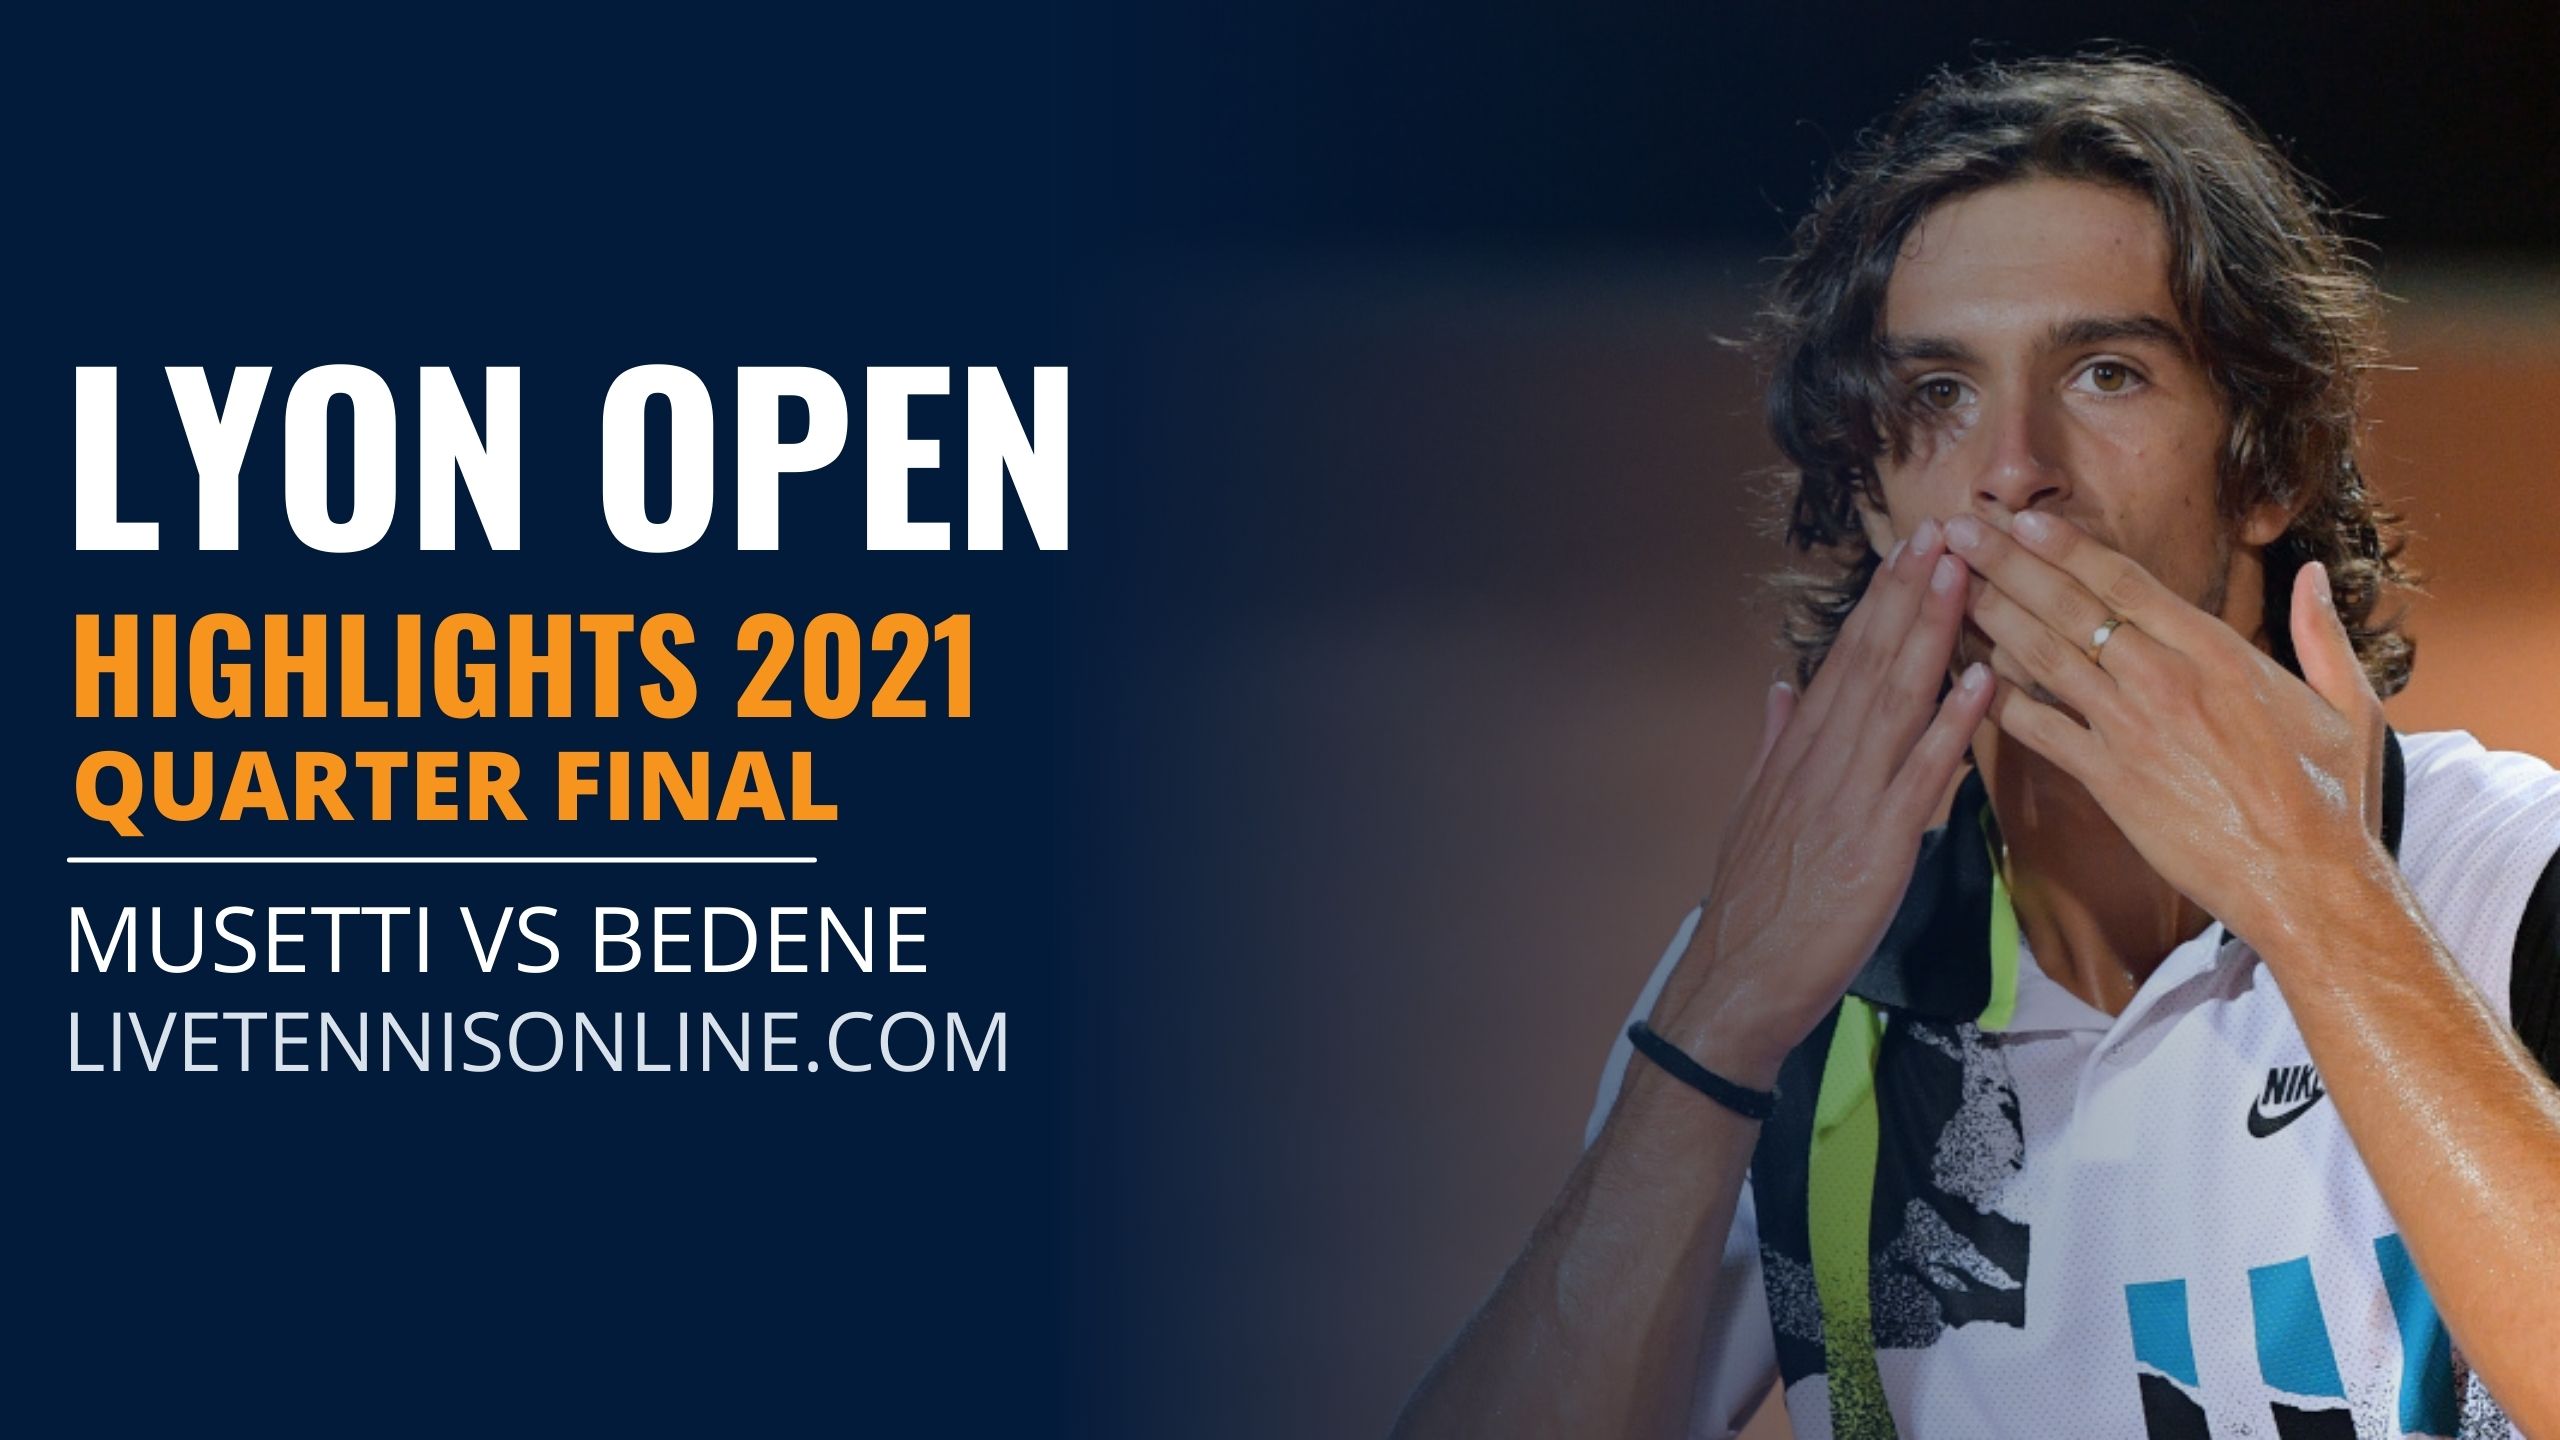 Musetti Vs Bedene Q-Final Highlights 2021